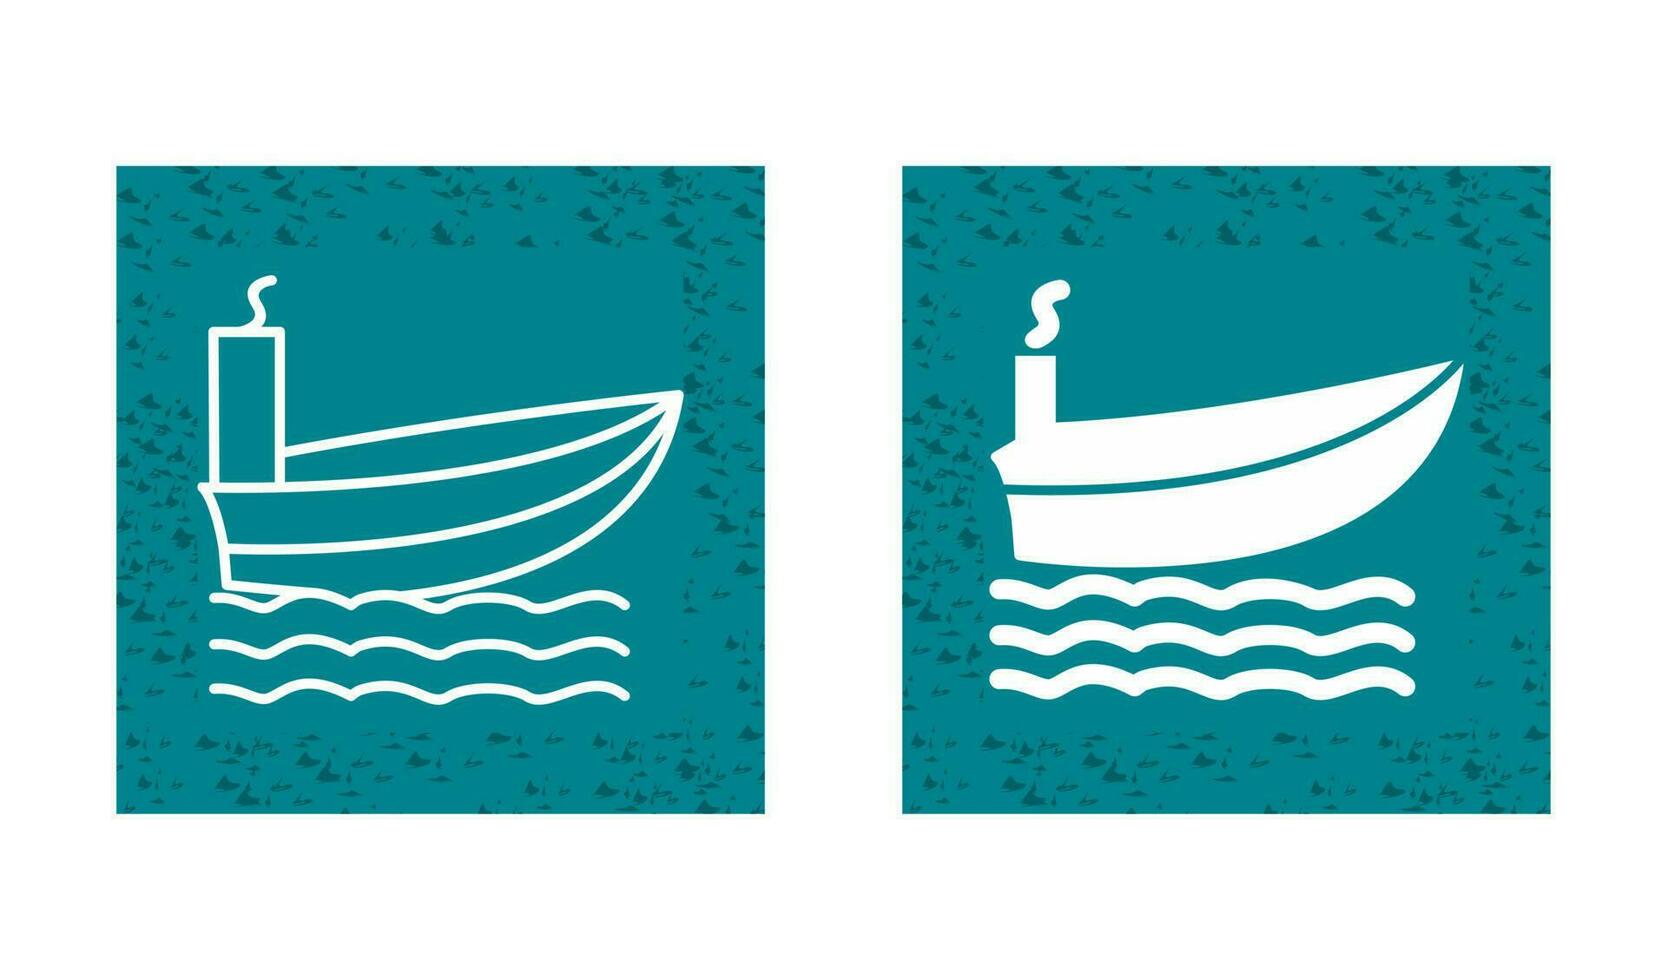 ícone de vetor de navio a vapor